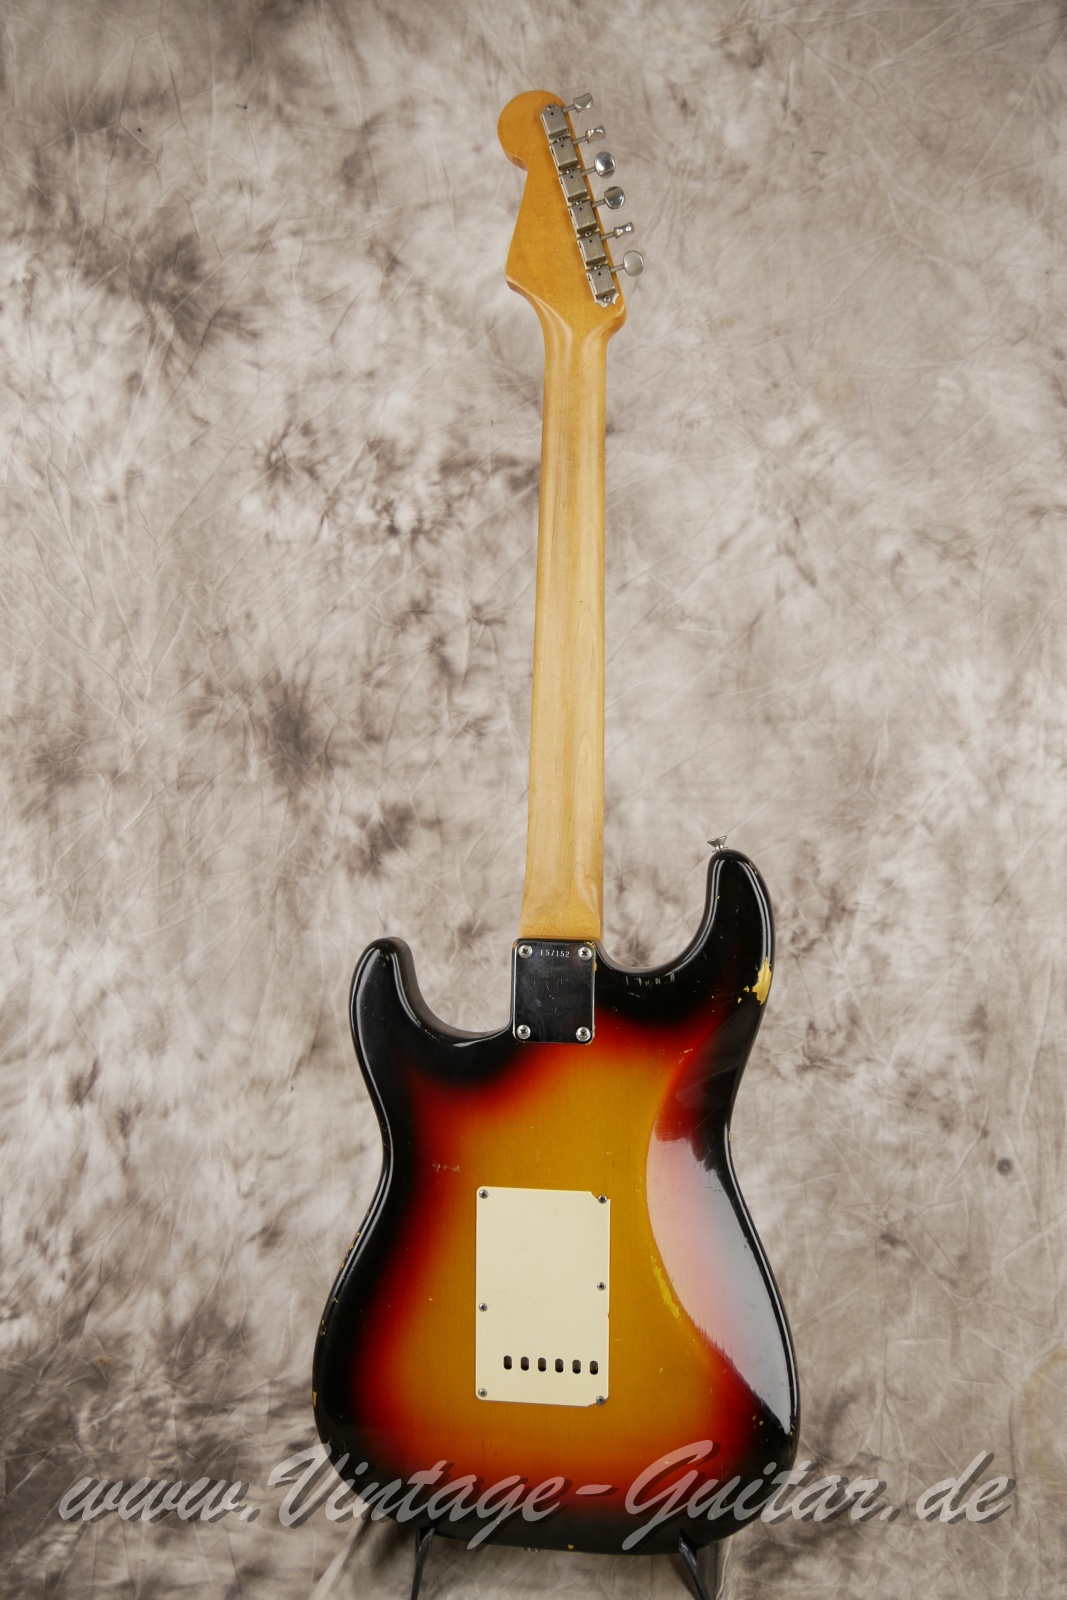 Fender-Stratocaster-1965-sunburst-003.JPG